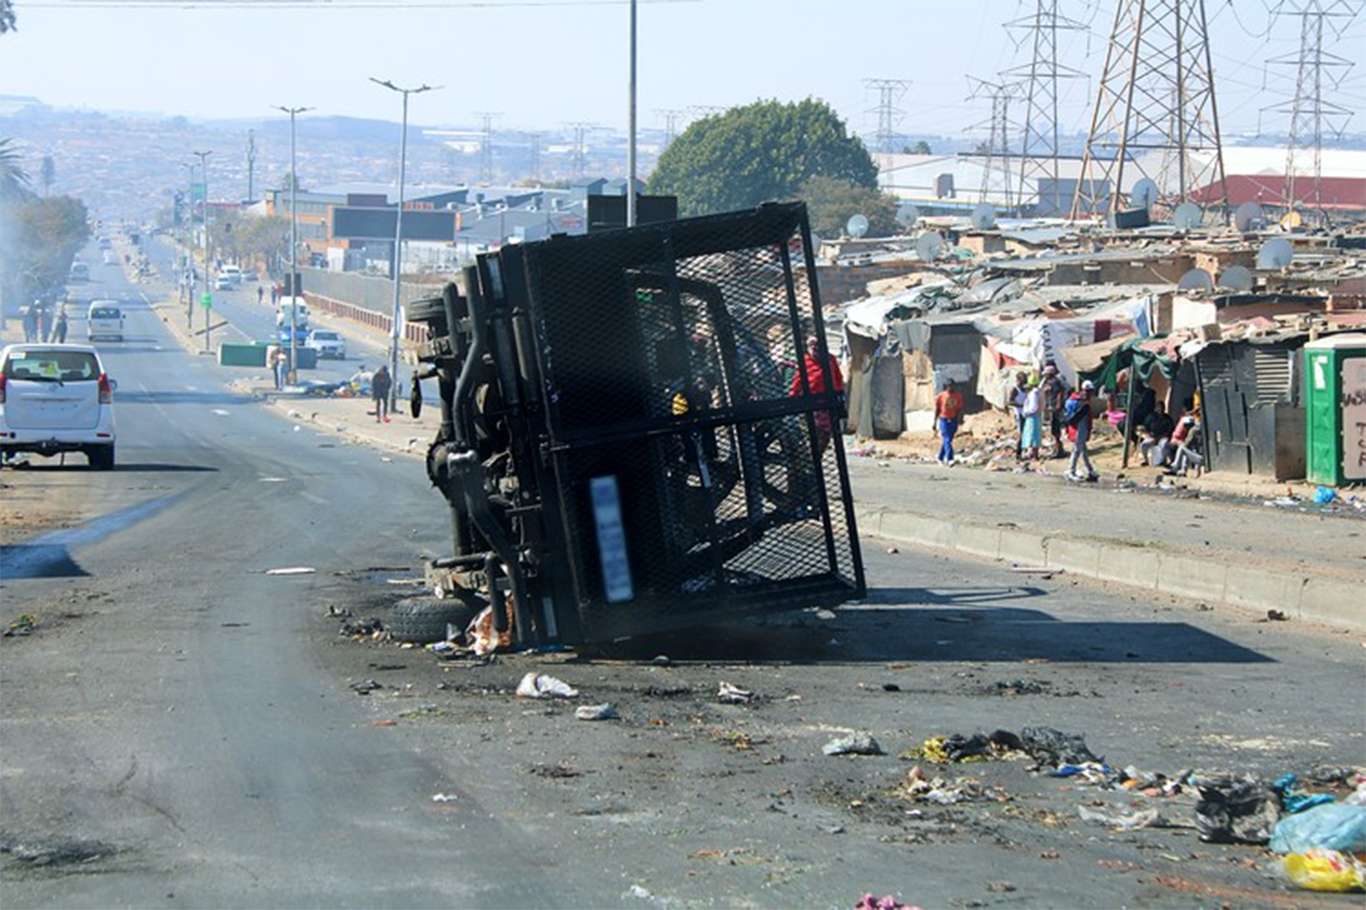 Güney Afrika’daki protestolarda bilanço ağırlaşıyor: 45 ölü